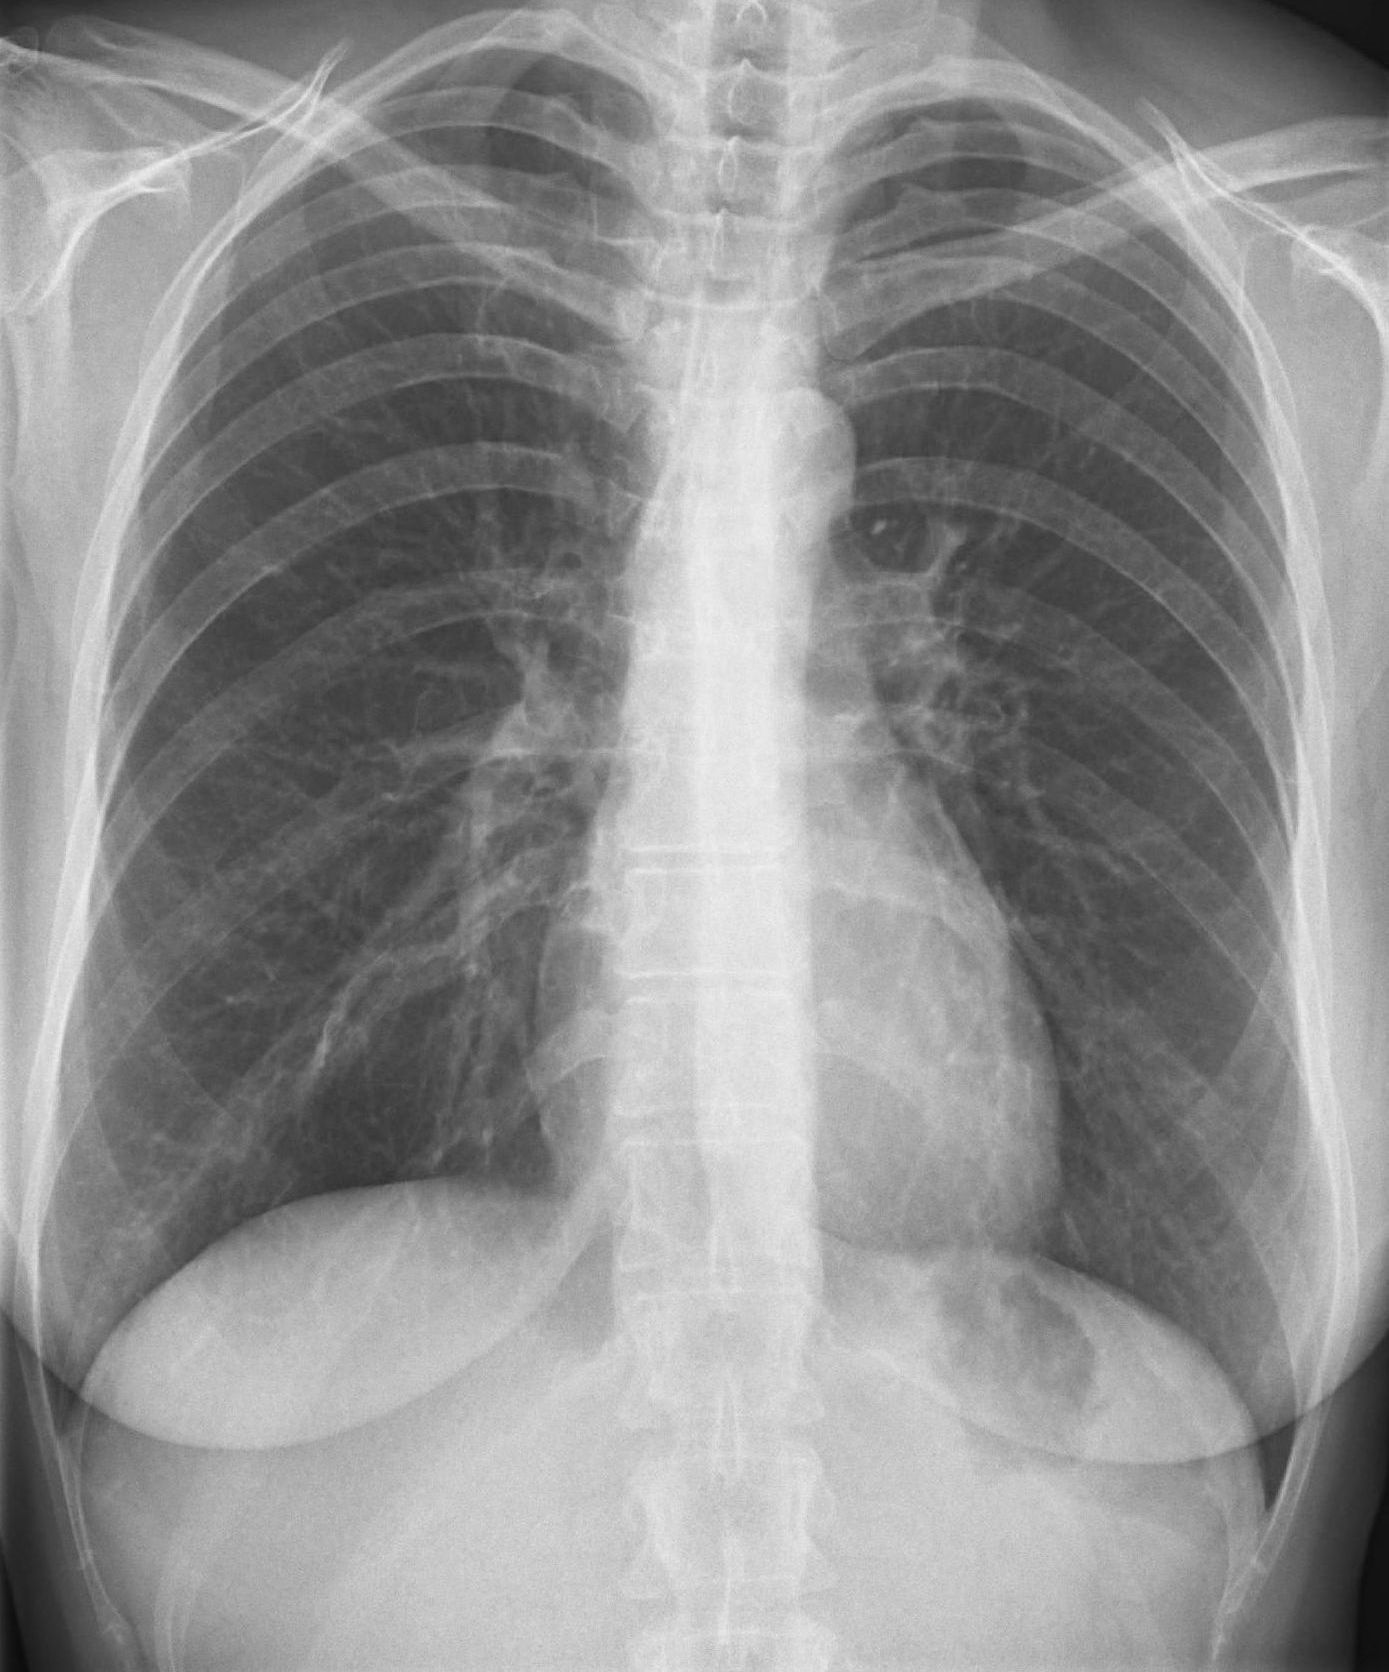 Röntgenbild der Lunge